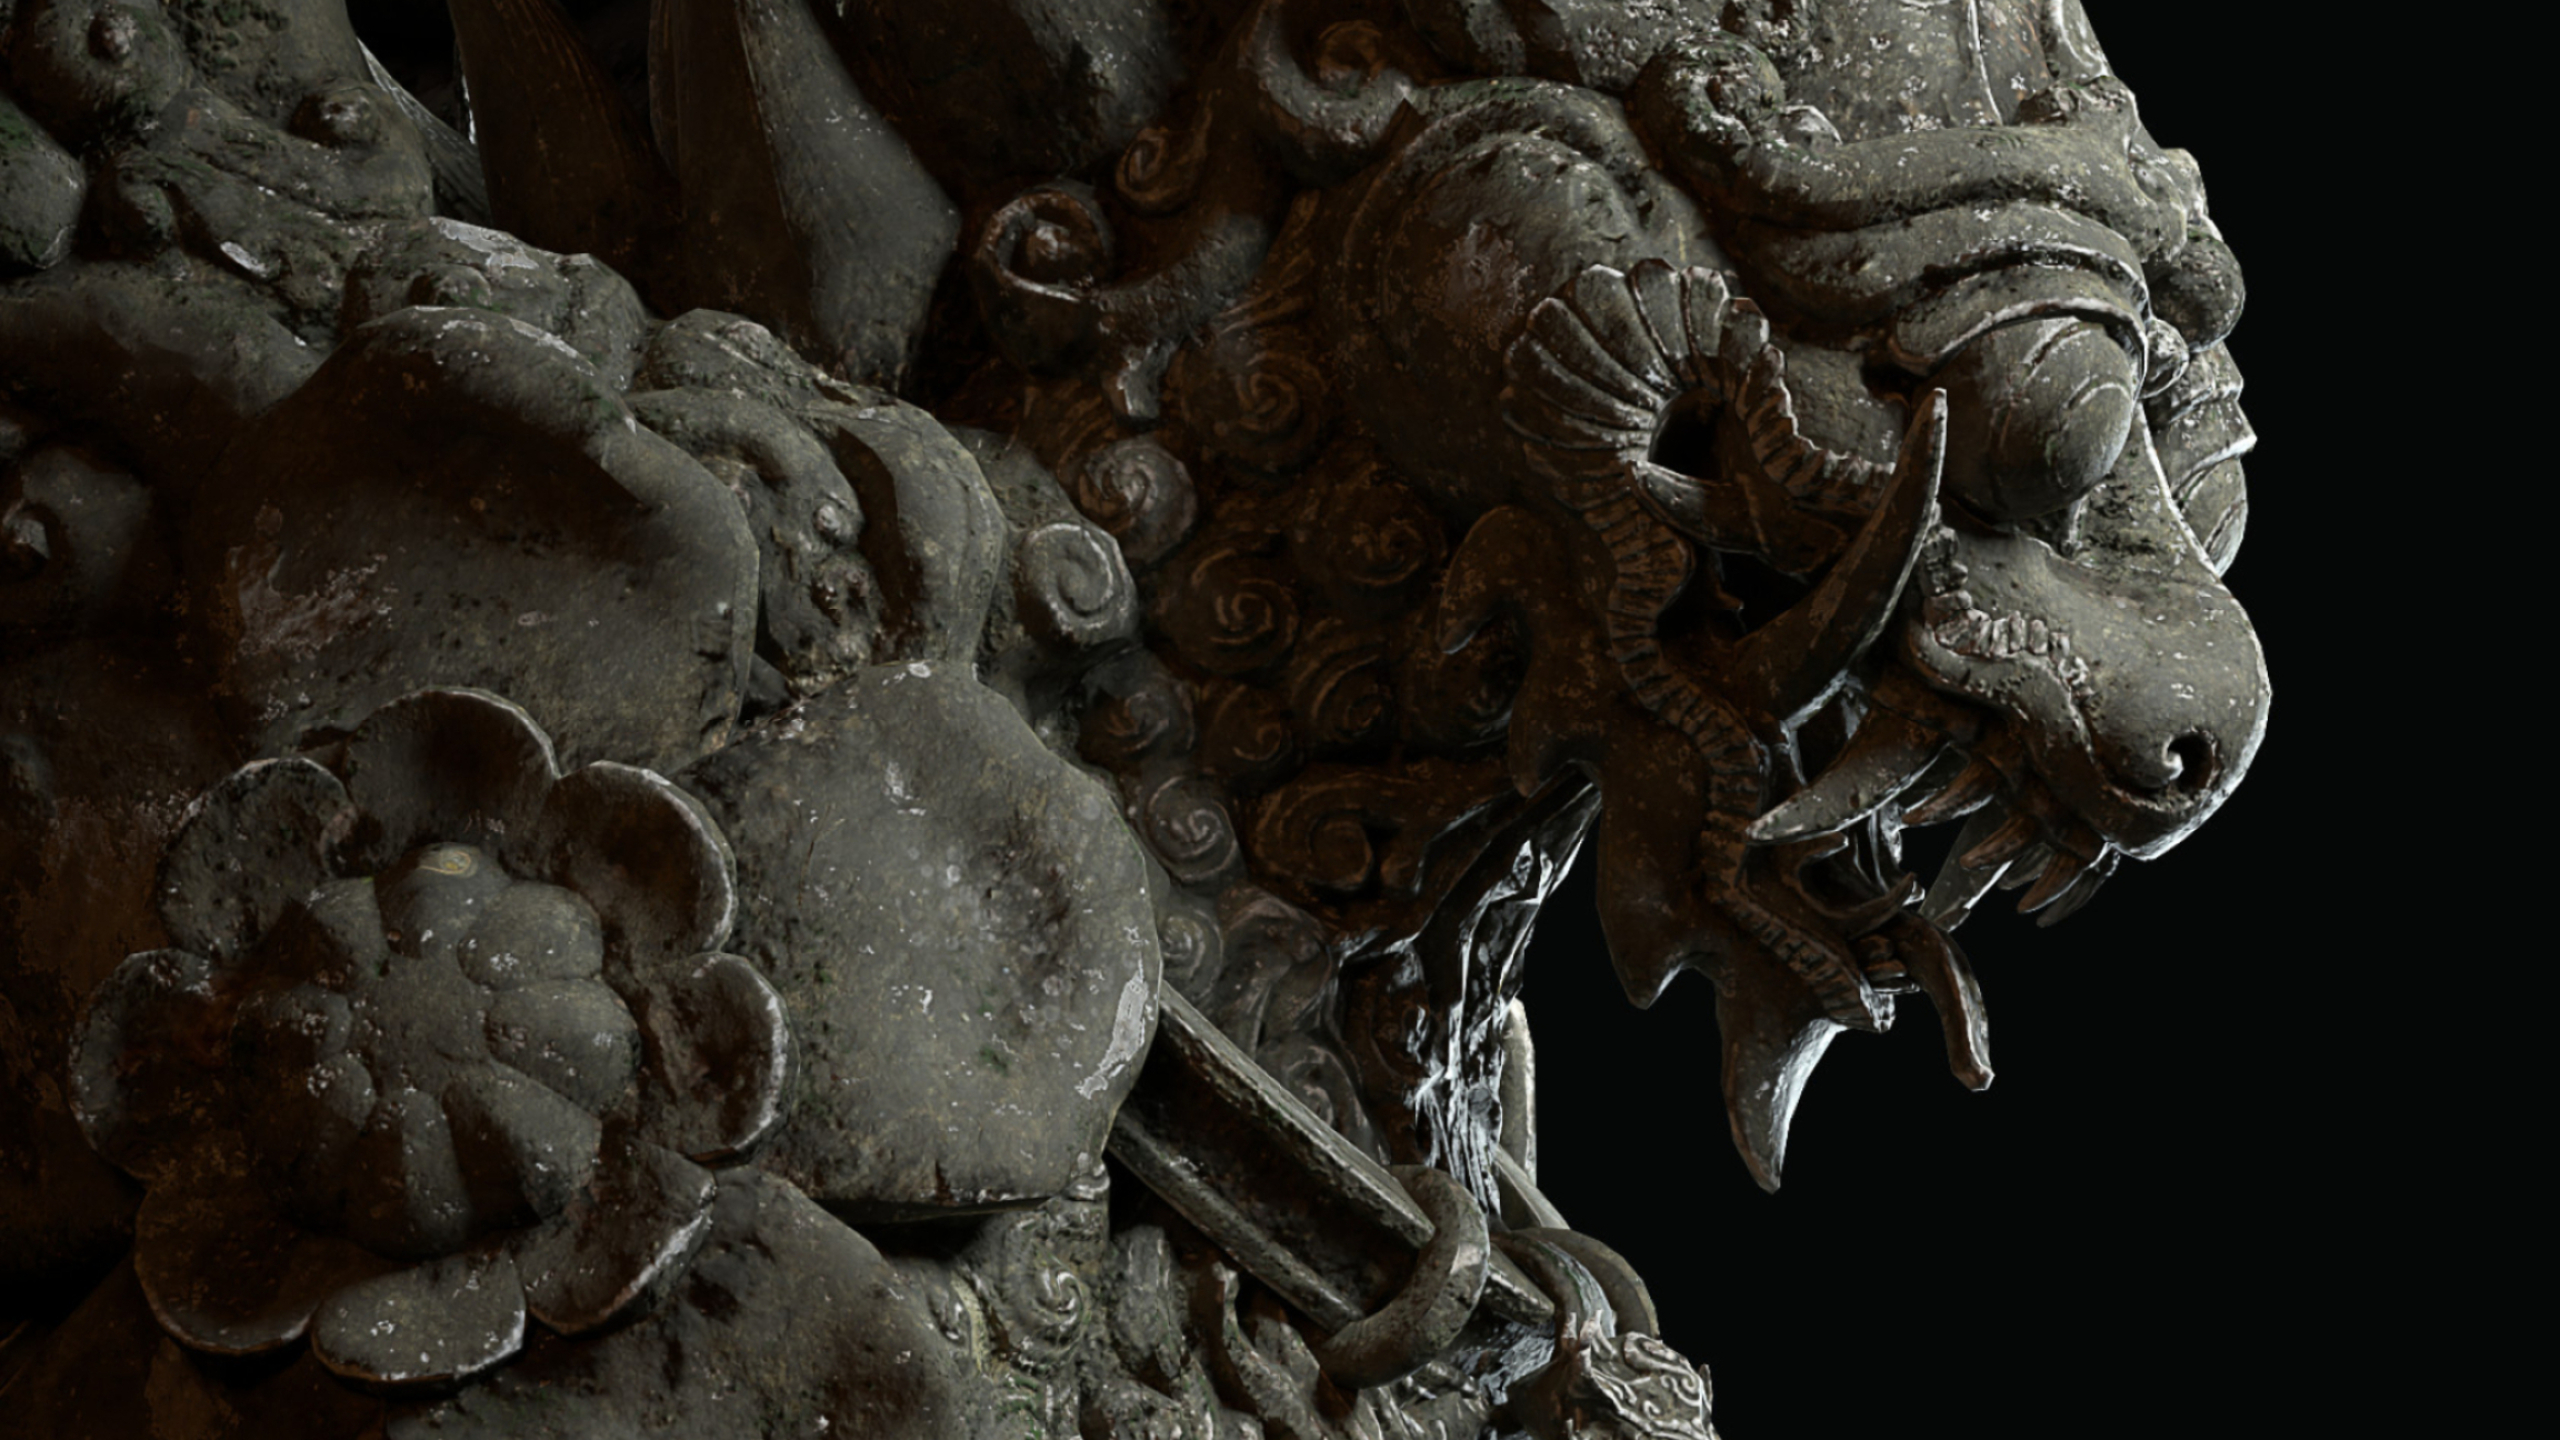 Shadow Warrior 3: Liondragon Statue, Designed by Paweł Kowalewski. 2560x1440 HD Wallpaper.